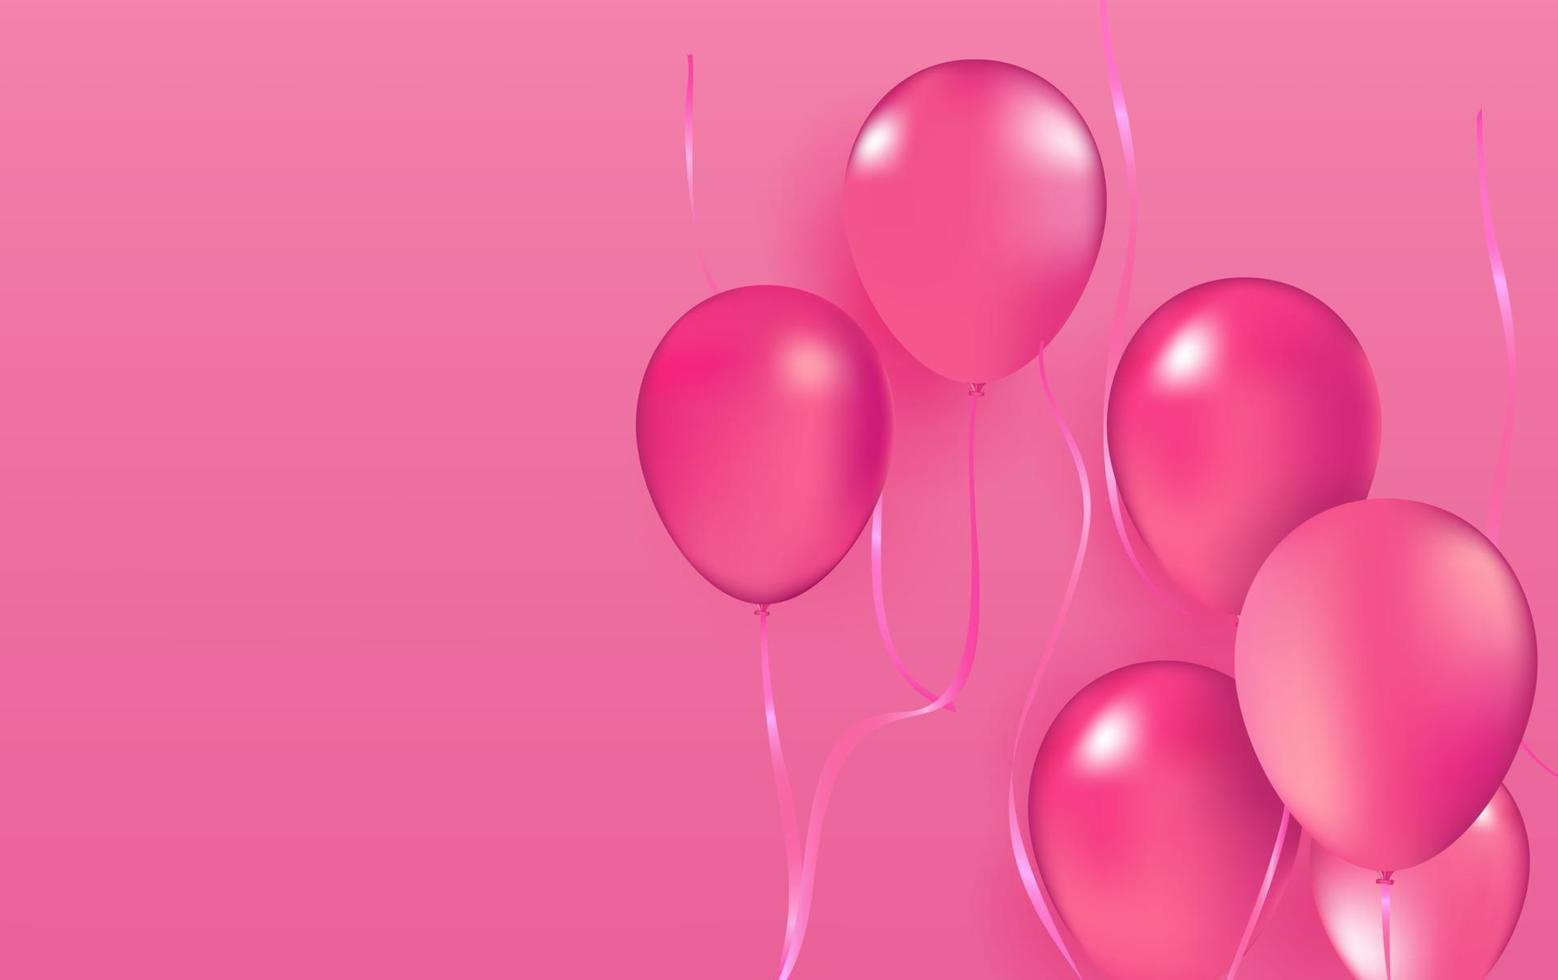 realistico vettore festa palloncini rosa romantico amore eleganza San Valentino giorno 14 febbraio decorazione compleanno celebrazione eleganza saluto carta design elemento isolato su rosa sfondo.